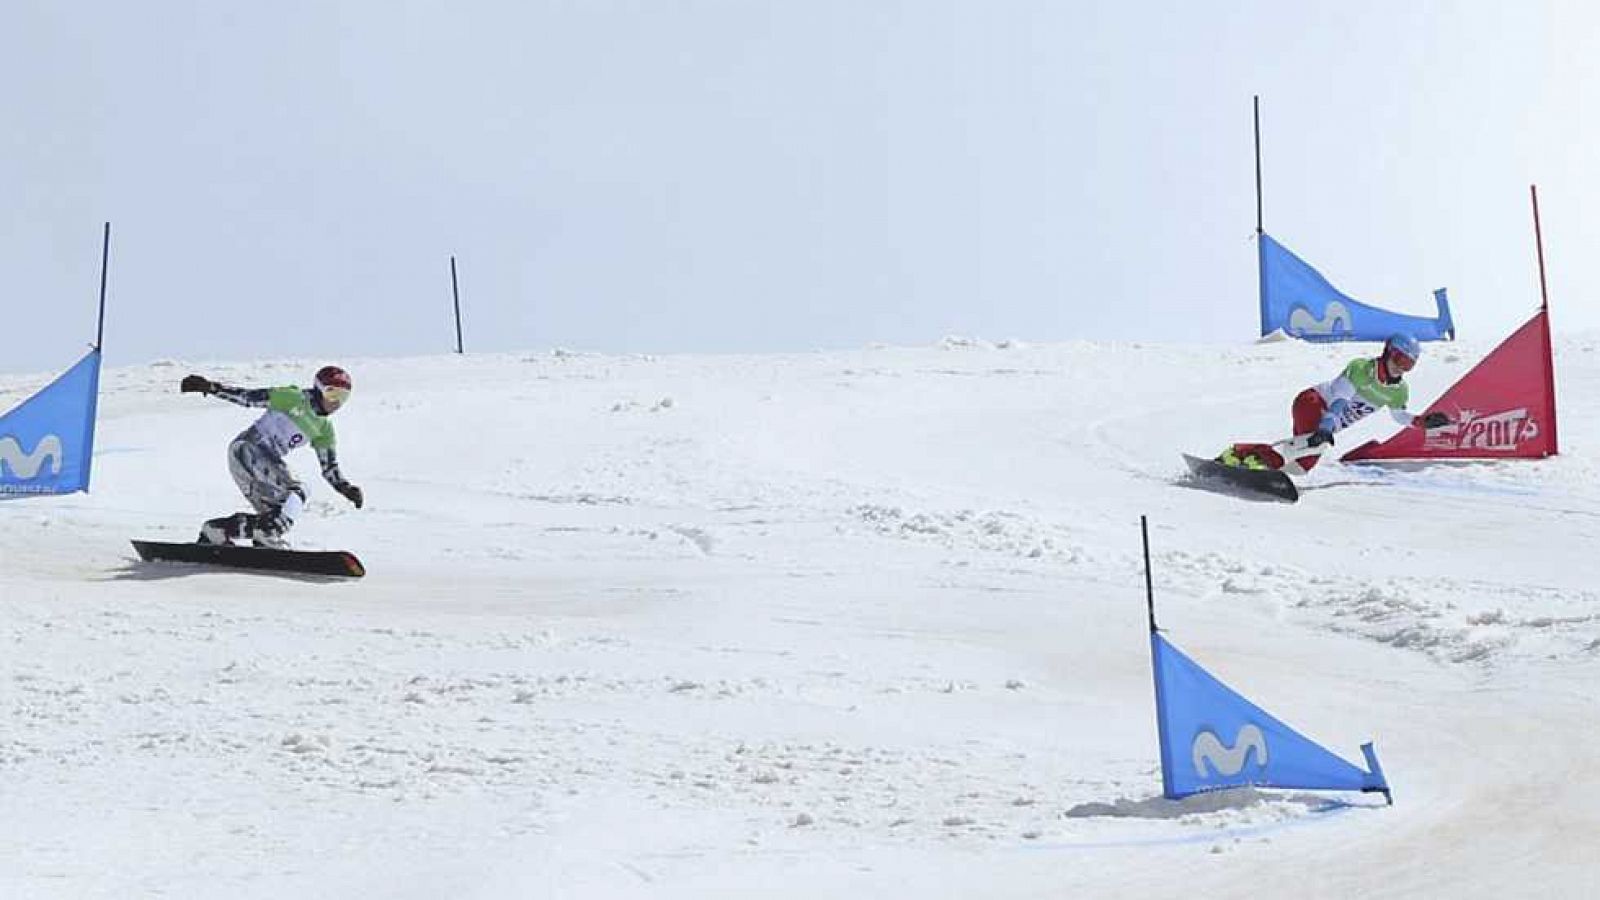 Campeonato del Mundo Snowboard y Freestyle - Snowboard Slalom Gigante Paralelo. Finales